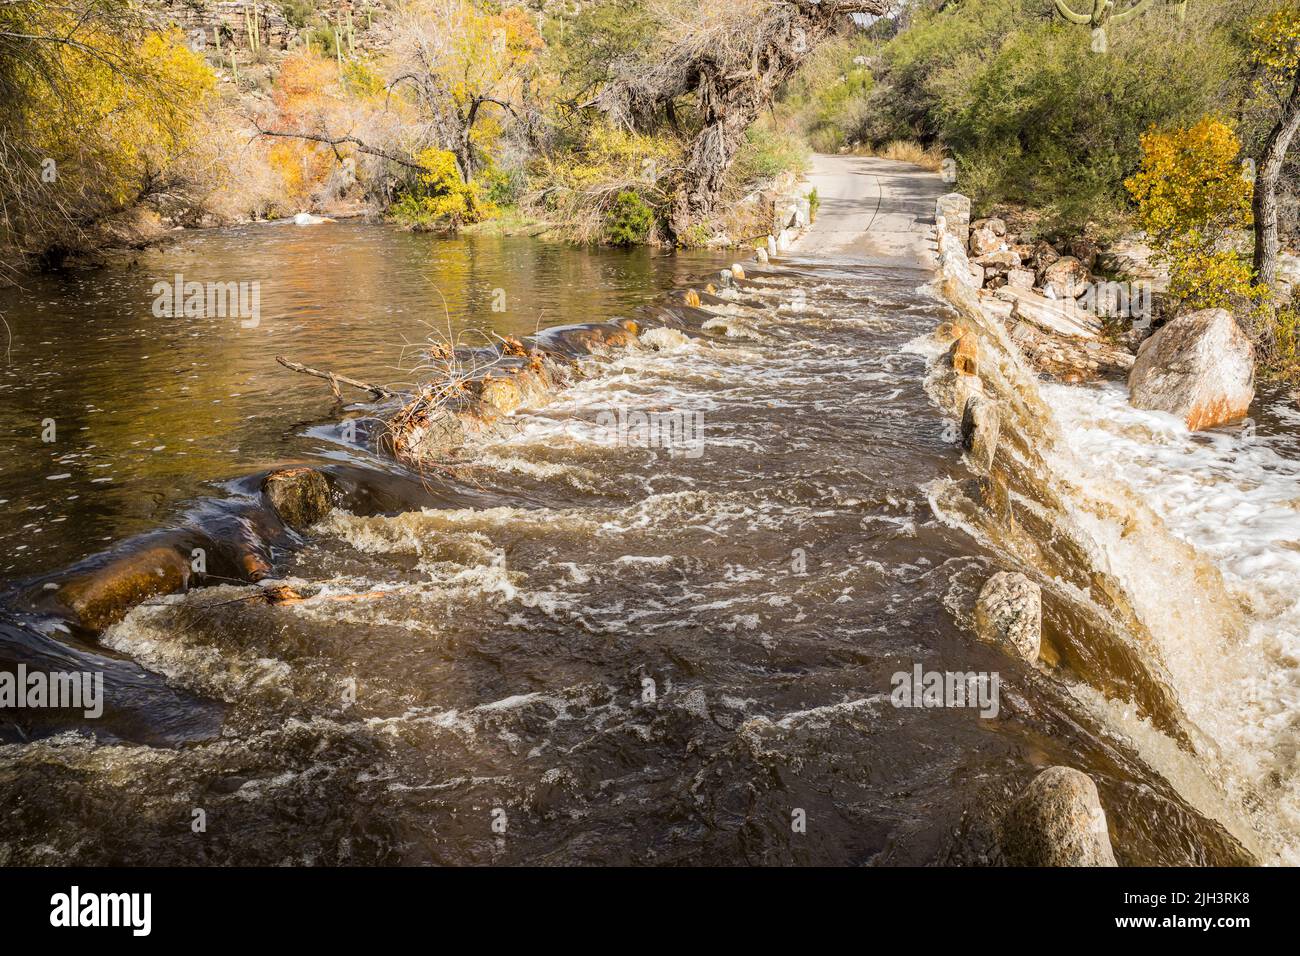 Mirando a través de Sabino Creek en un día lluvioso donde el agua hace que los cruces sean peligrosos en el área recreativa de Sabino Canyon, Arizona, EE.UU. Foto de stock